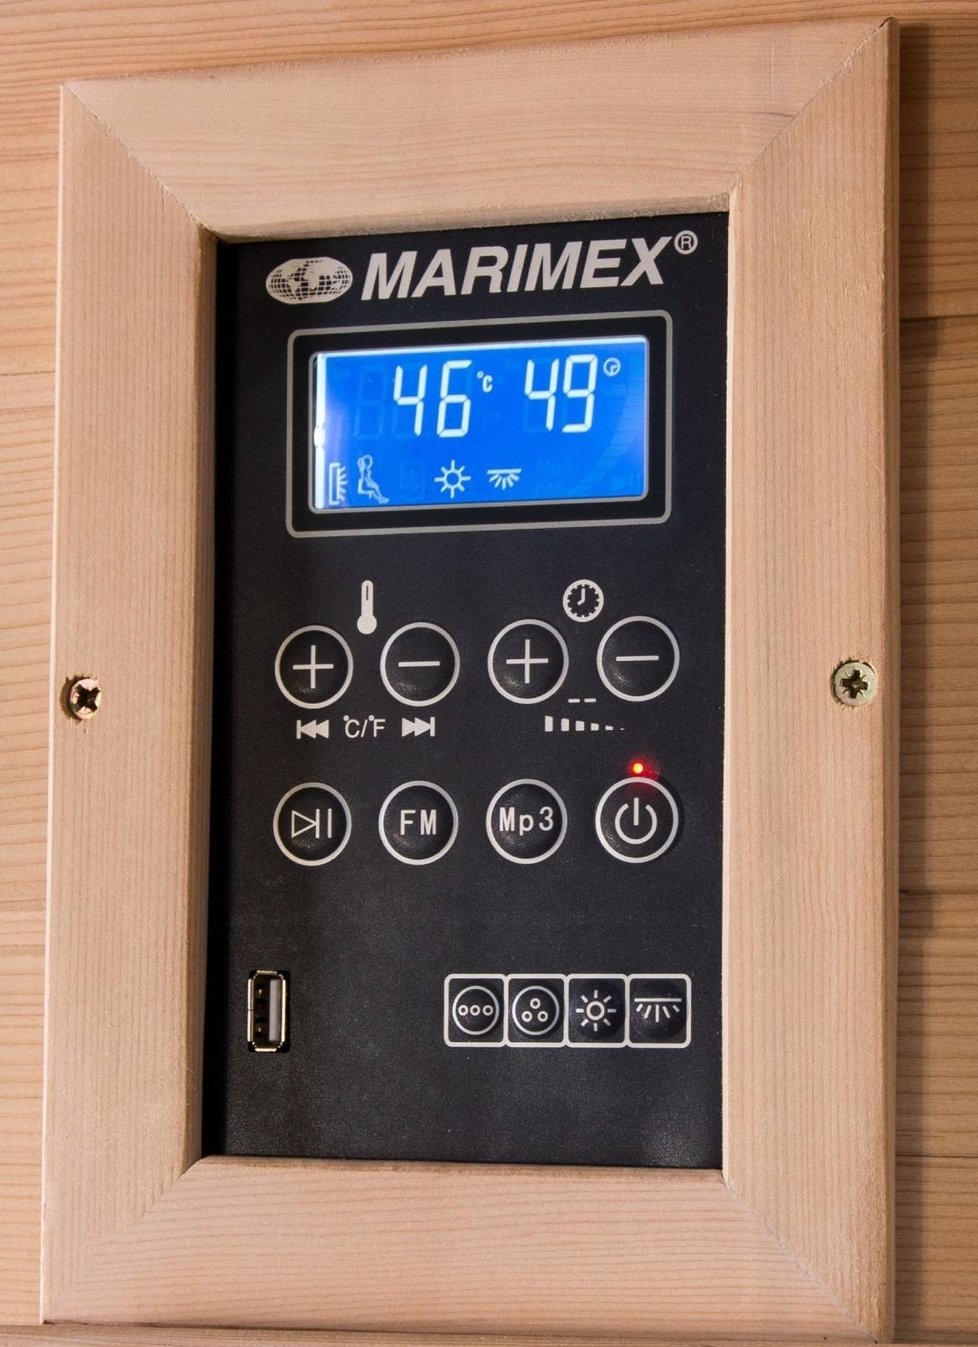 Snadné ovládání a kontrola teploty, která u infrasauny nepřekročí 60°C.